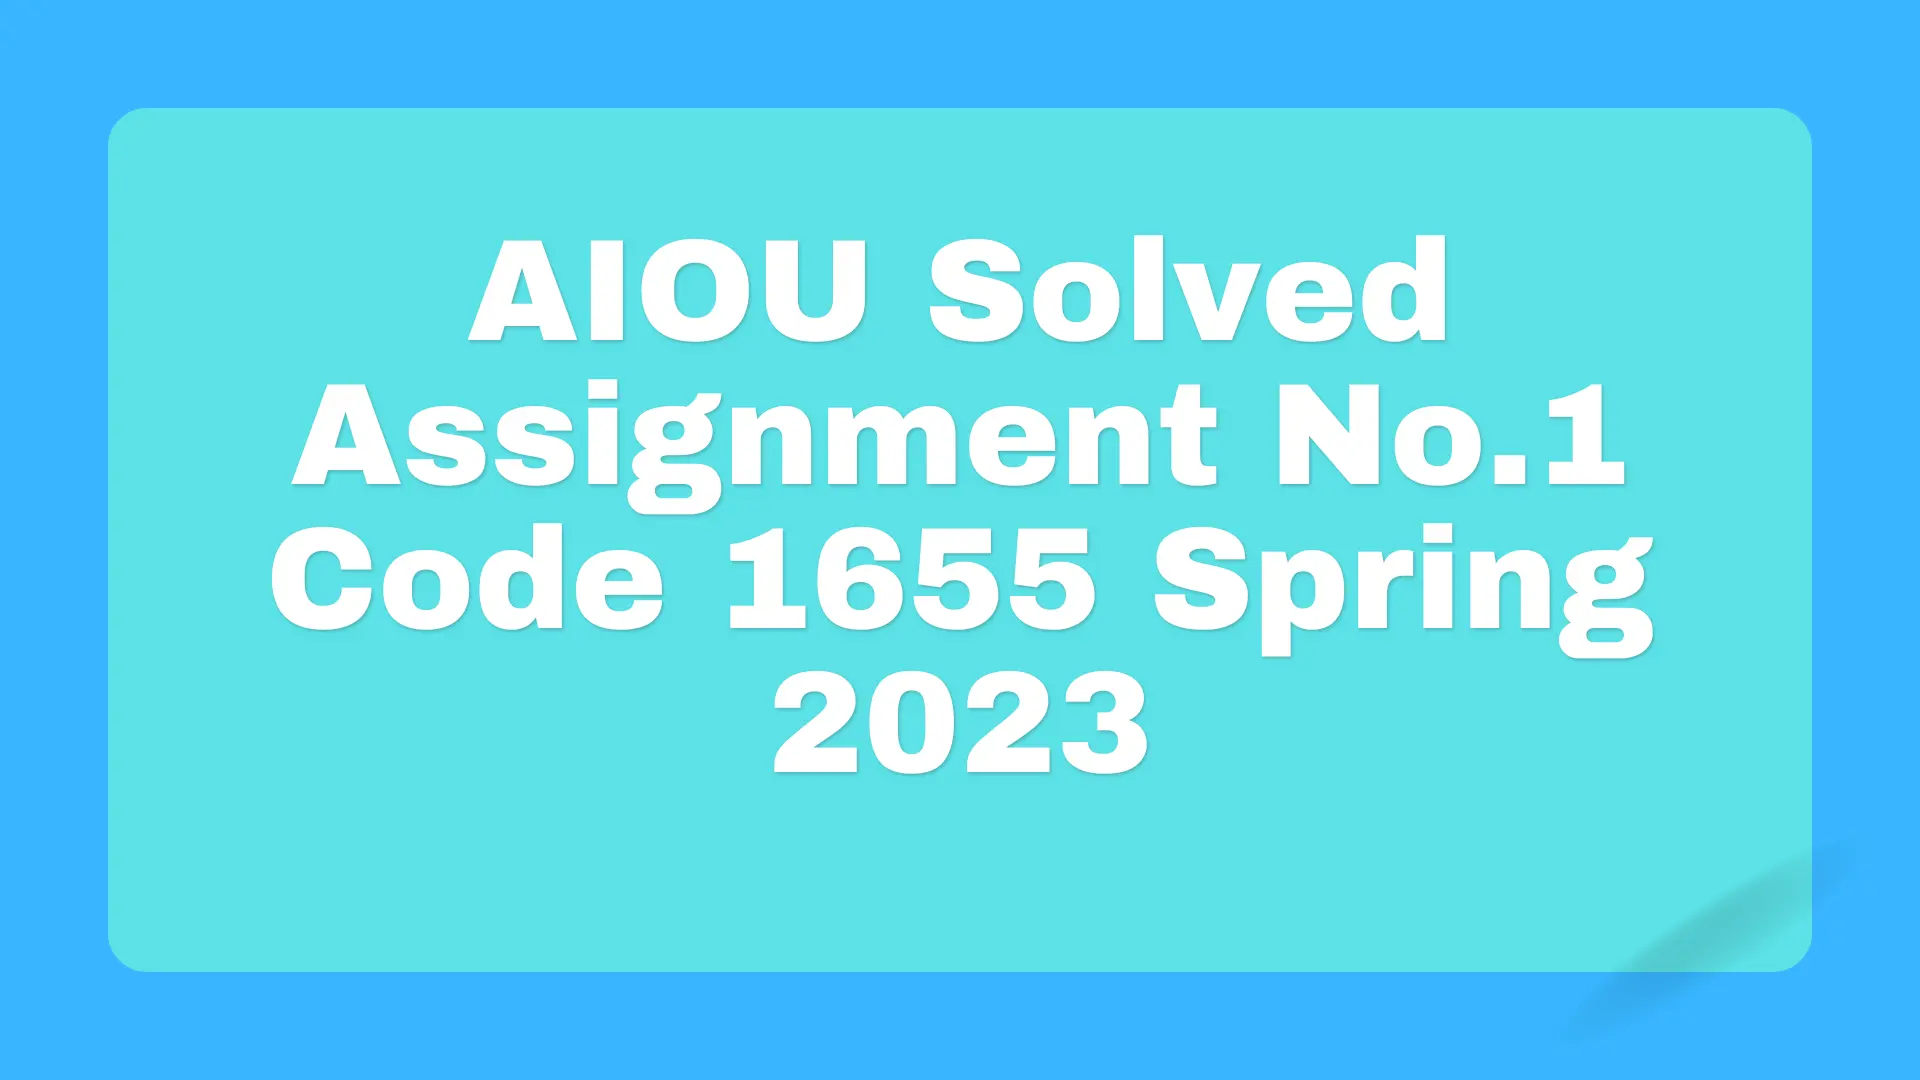 Assignment No.1 AIOU 1655 Spring 2023